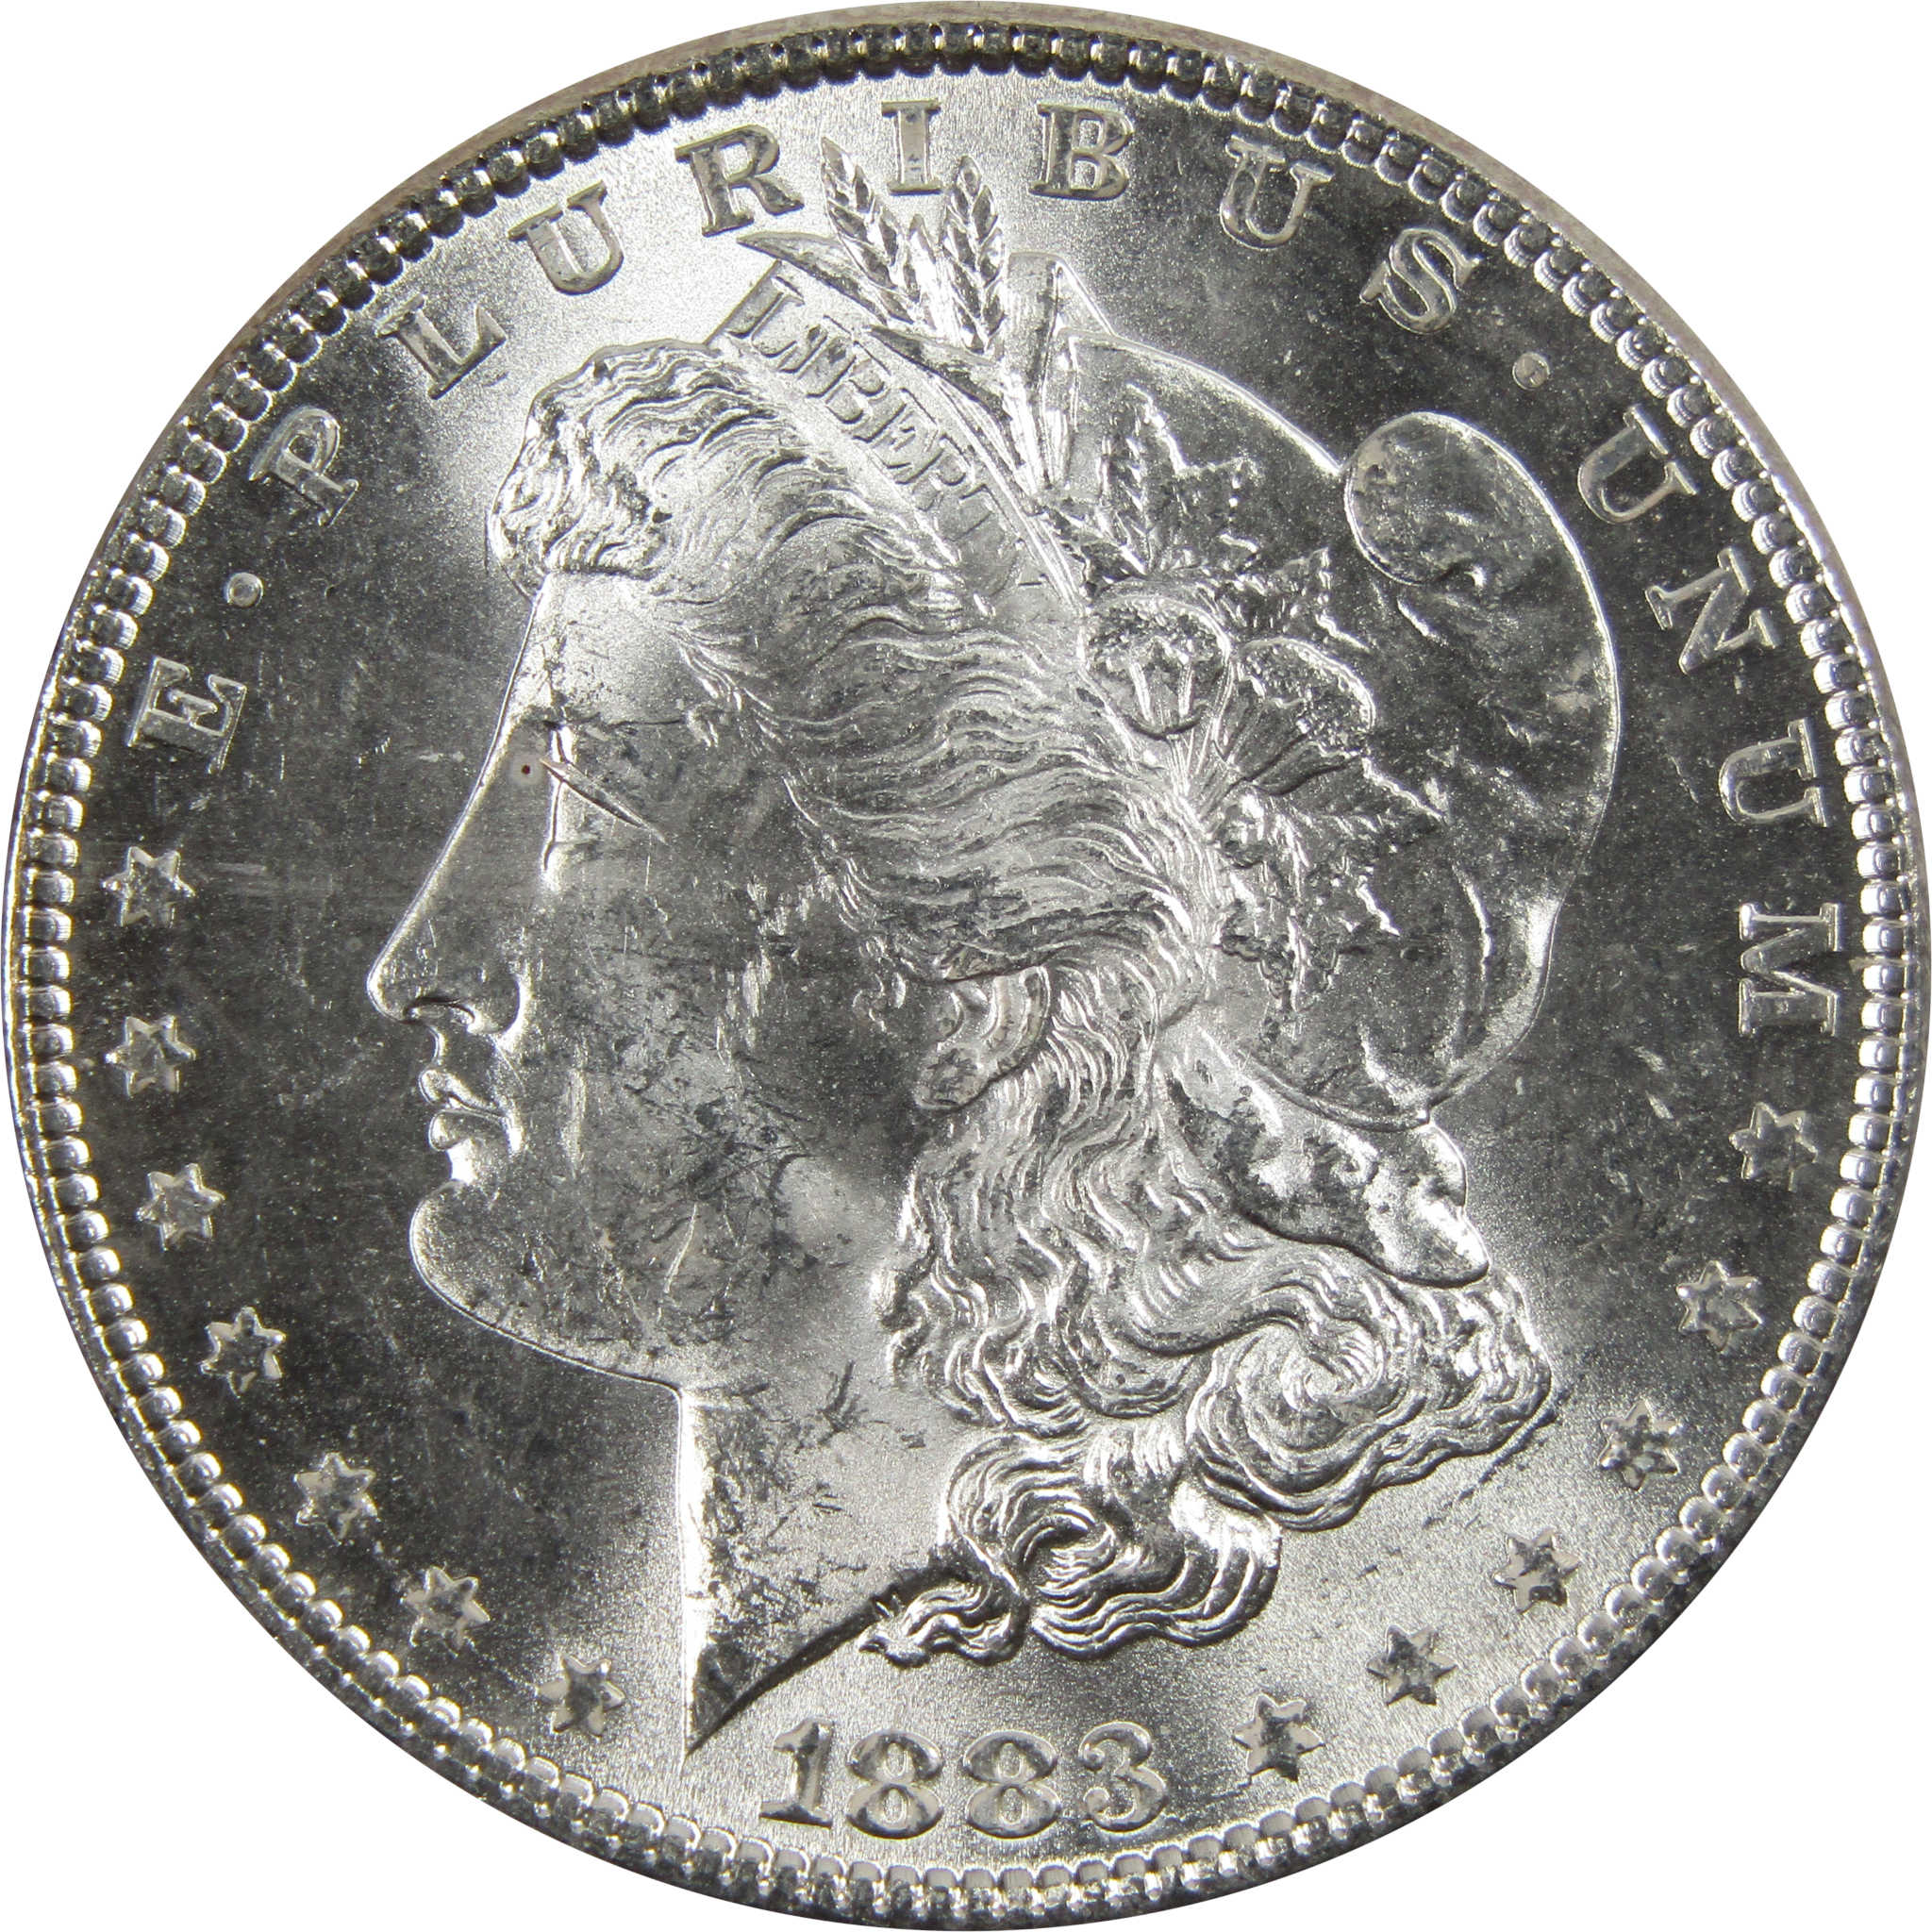 1883 Morgan Dollar BU Uncirculated 90% Silver $1 Coin SKU:I5171 - Morgan coin - Morgan silver dollar - Morgan silver dollar for sale - Profile Coins &amp; Collectibles